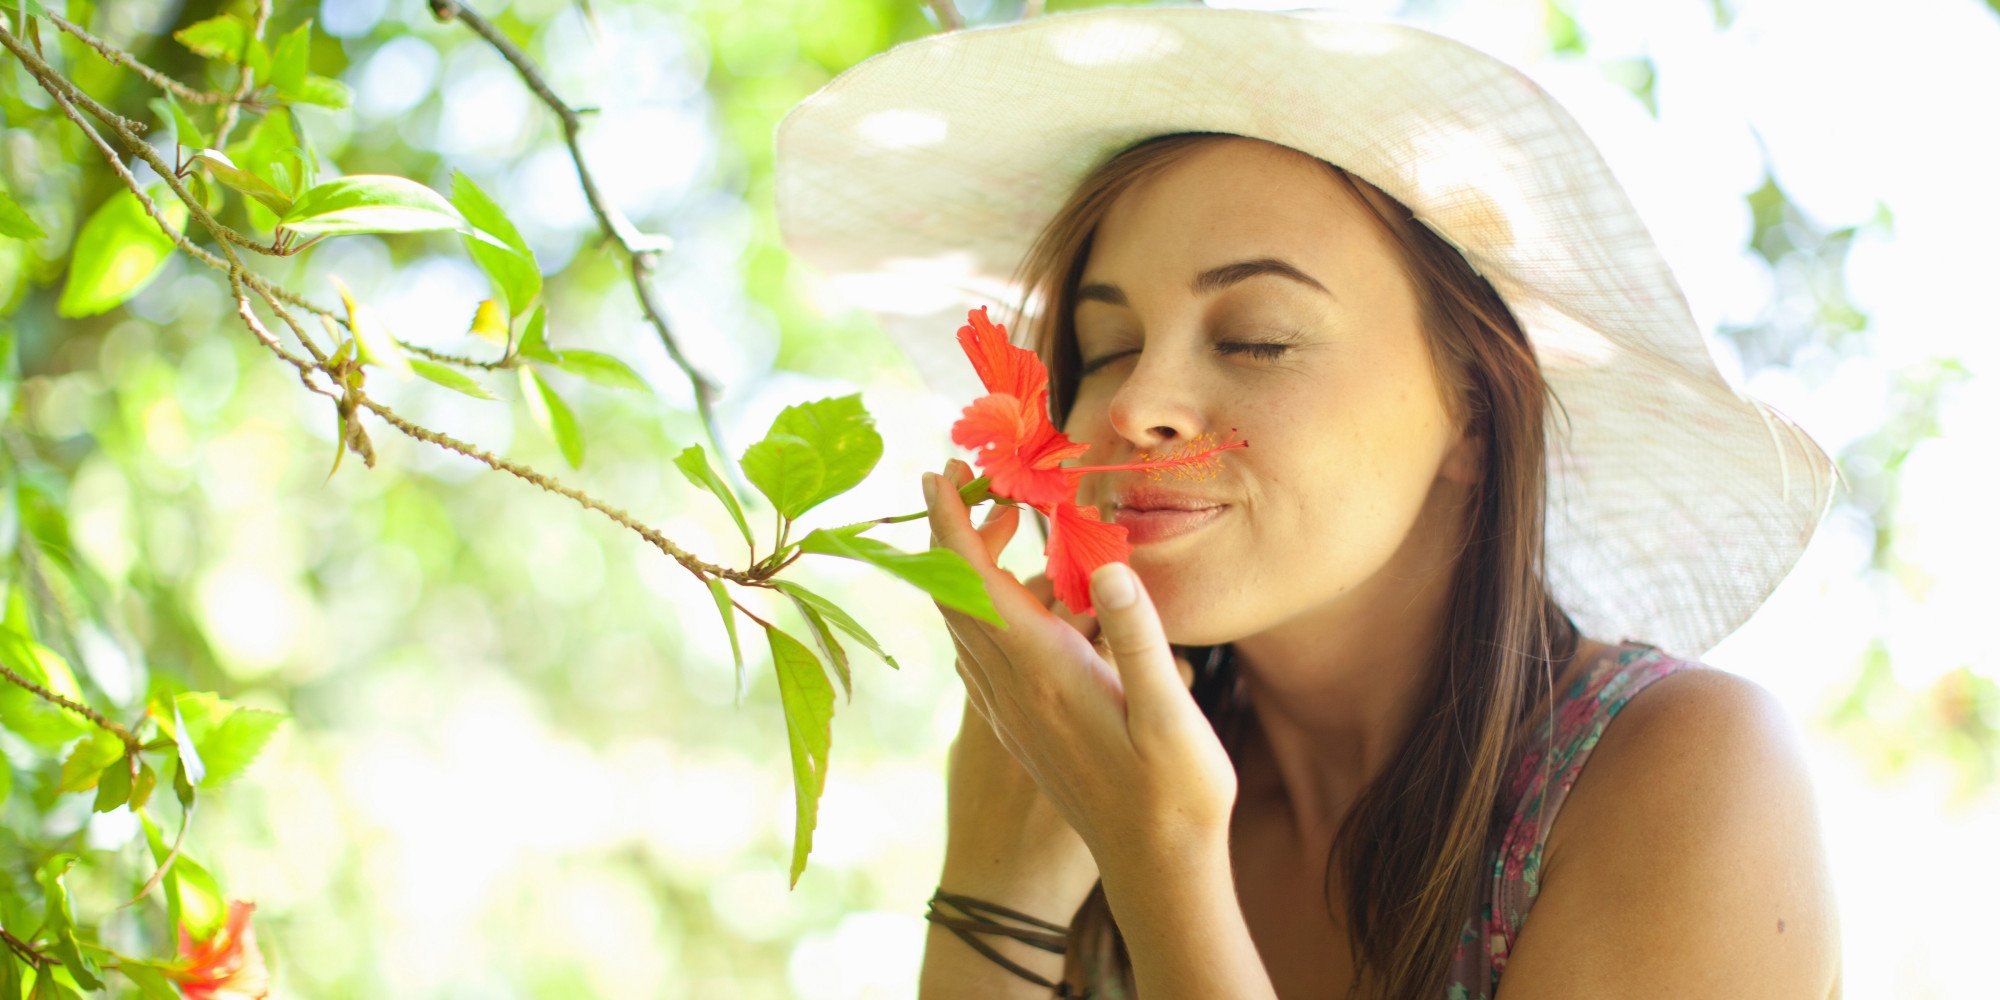 Μάθετε ποιες μυρωδιές λειτουργούν ως αφροδισιακά για άνδρες & γυναίκες!